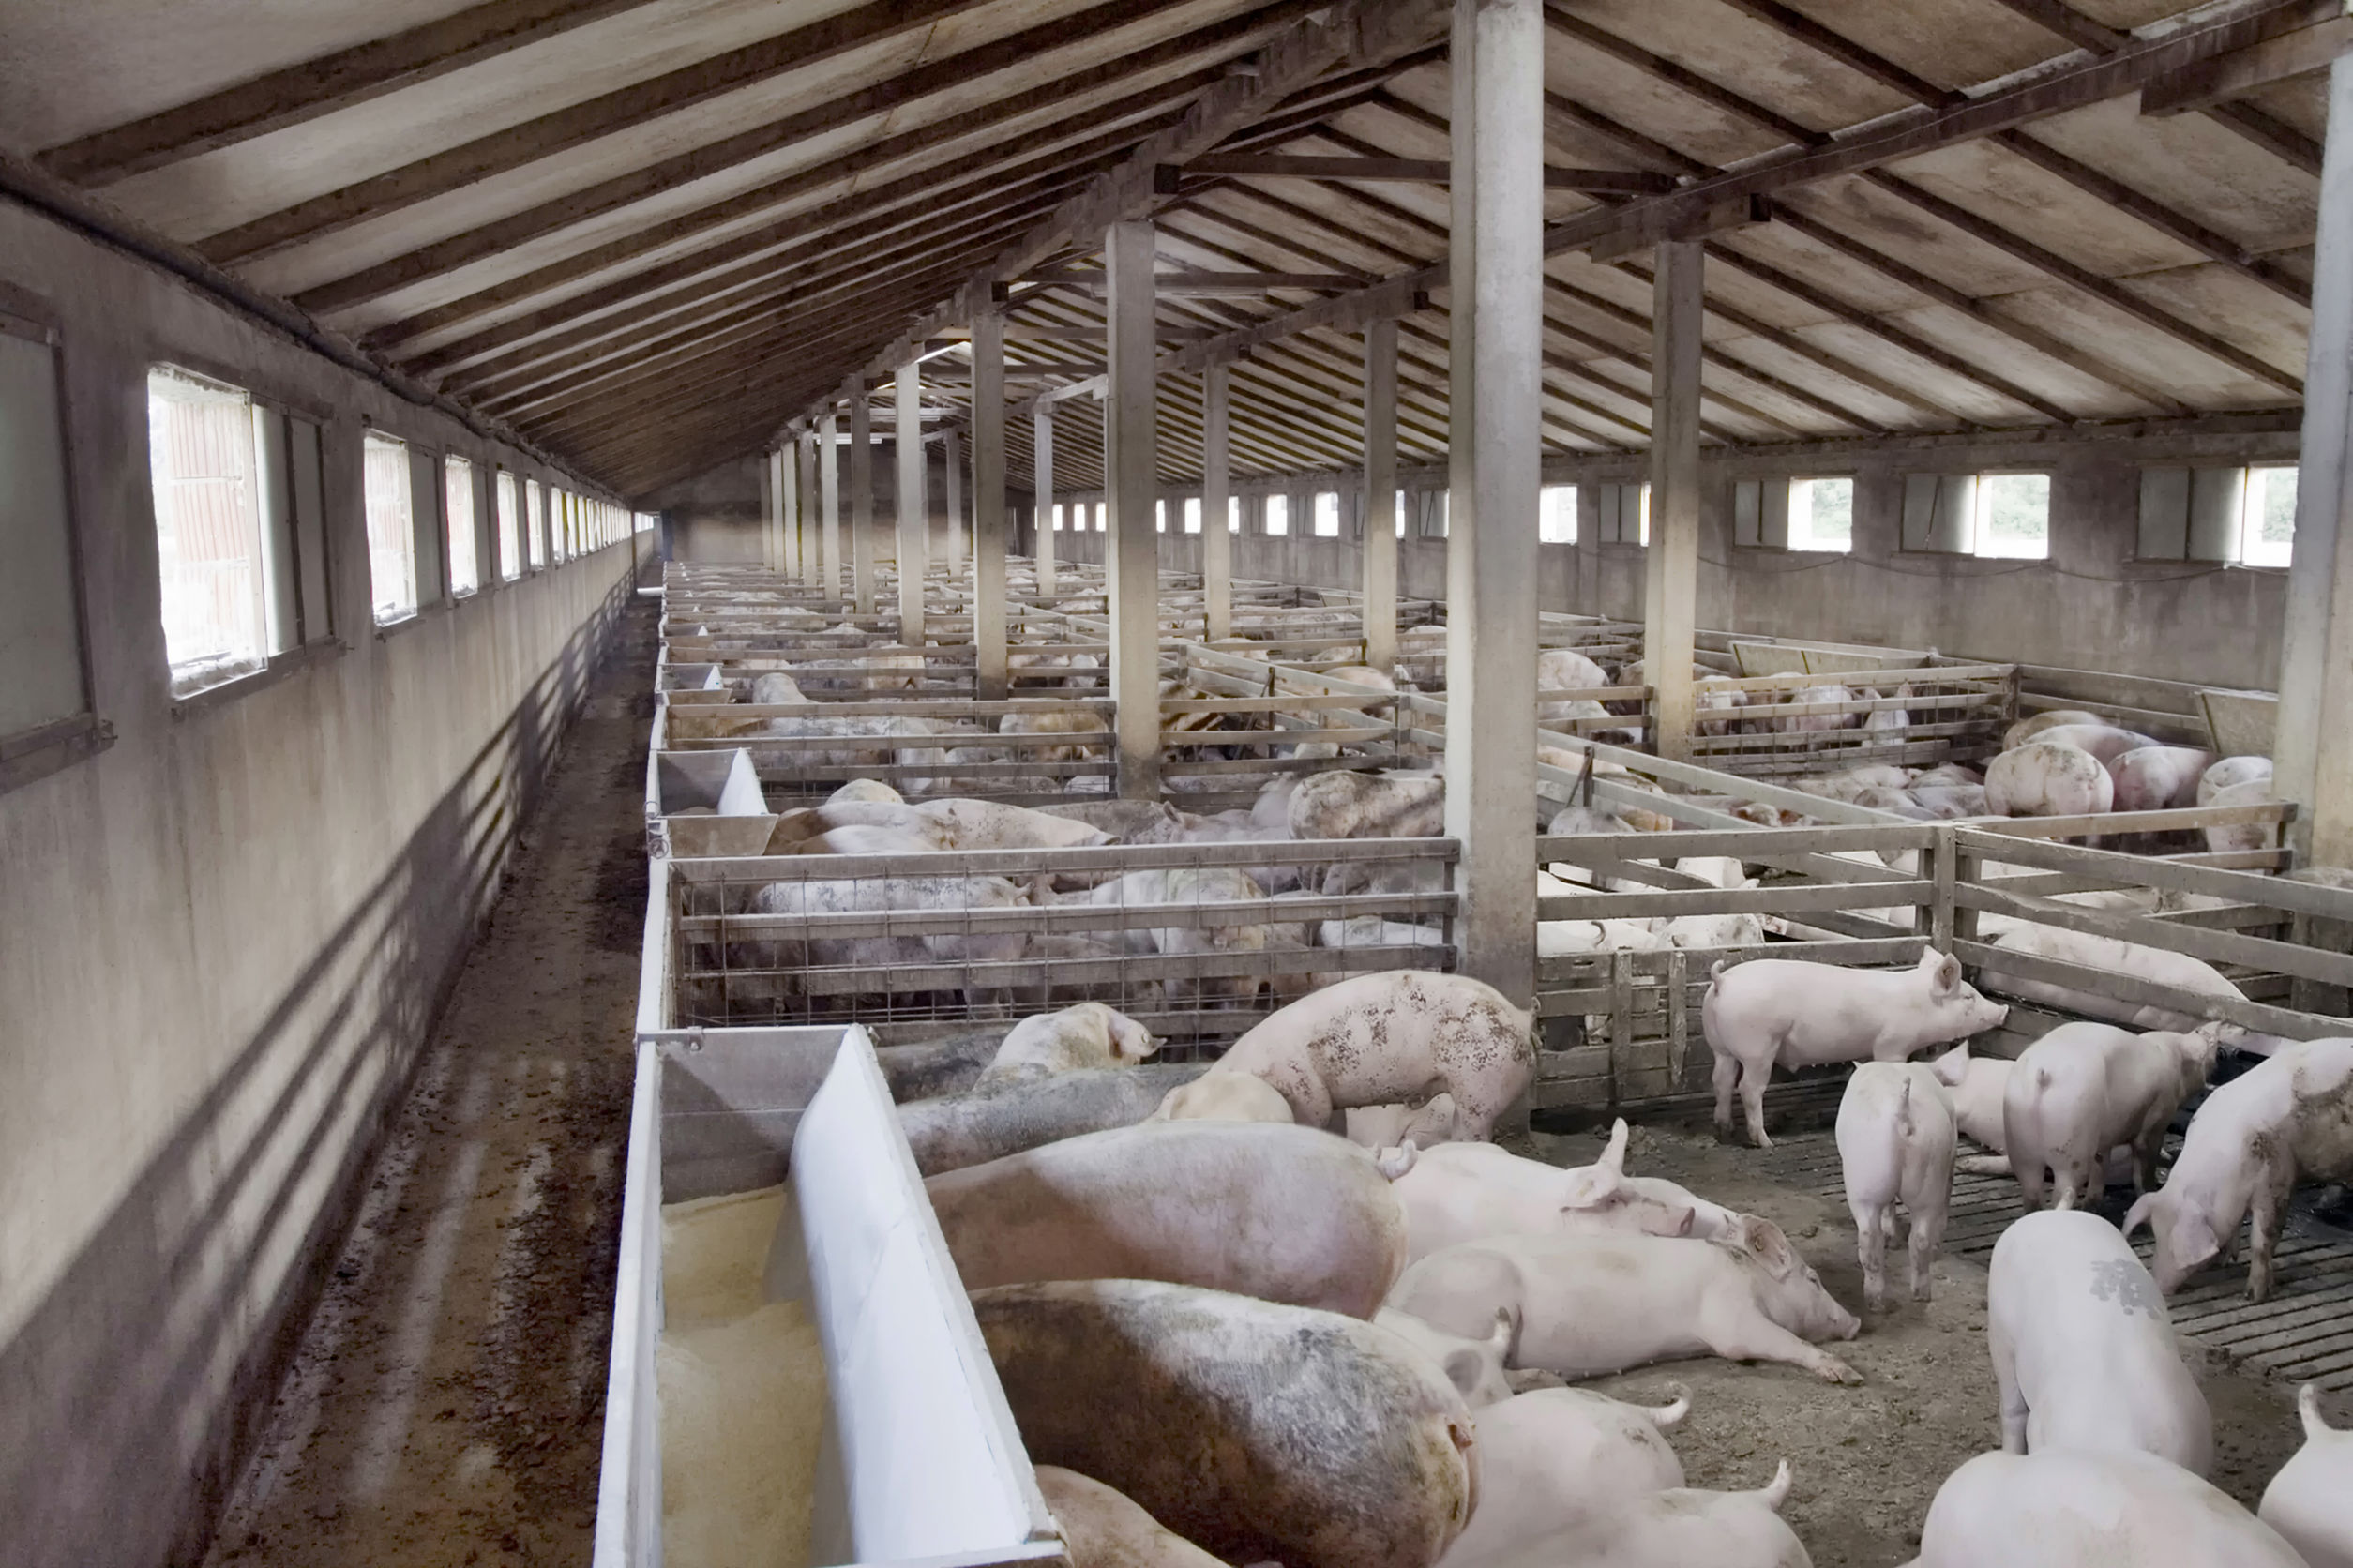 Pesta porcină africană a ajuns şi în Călăraşi, cel de al nouălea judeţ afectat de virus